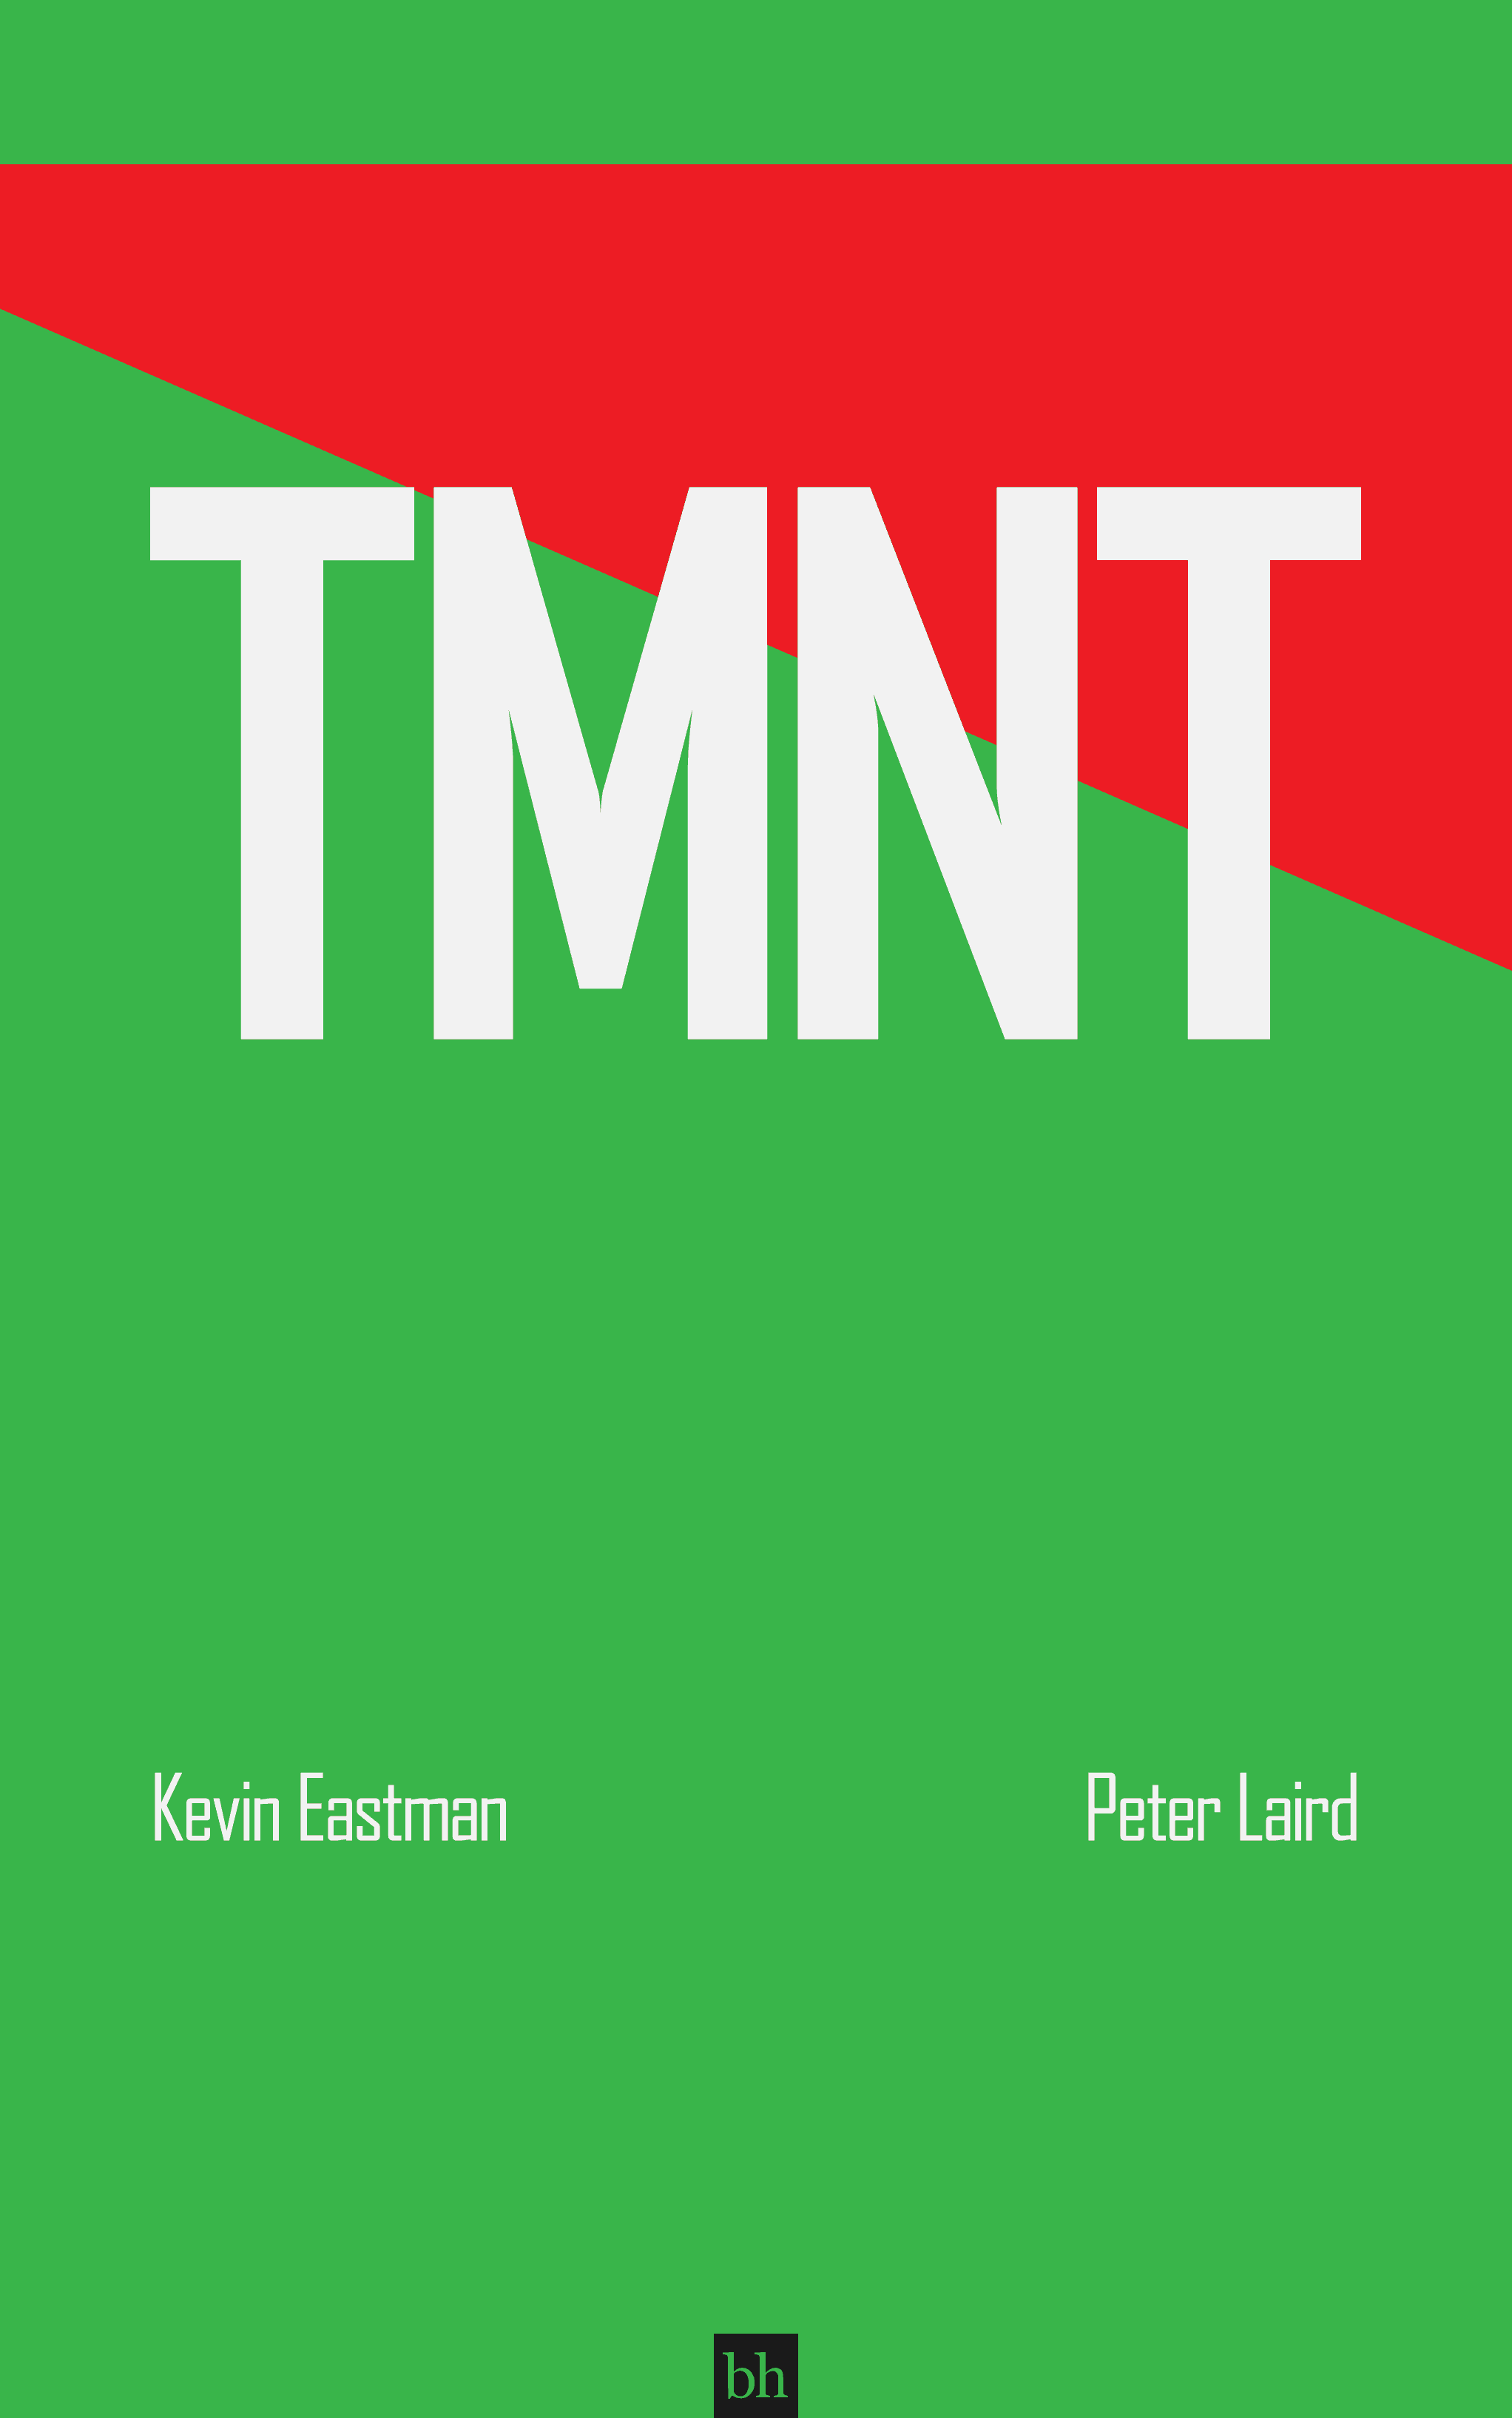 Teenage Mutant Ninja Turtles by Kevin Eastman and Peter Laird